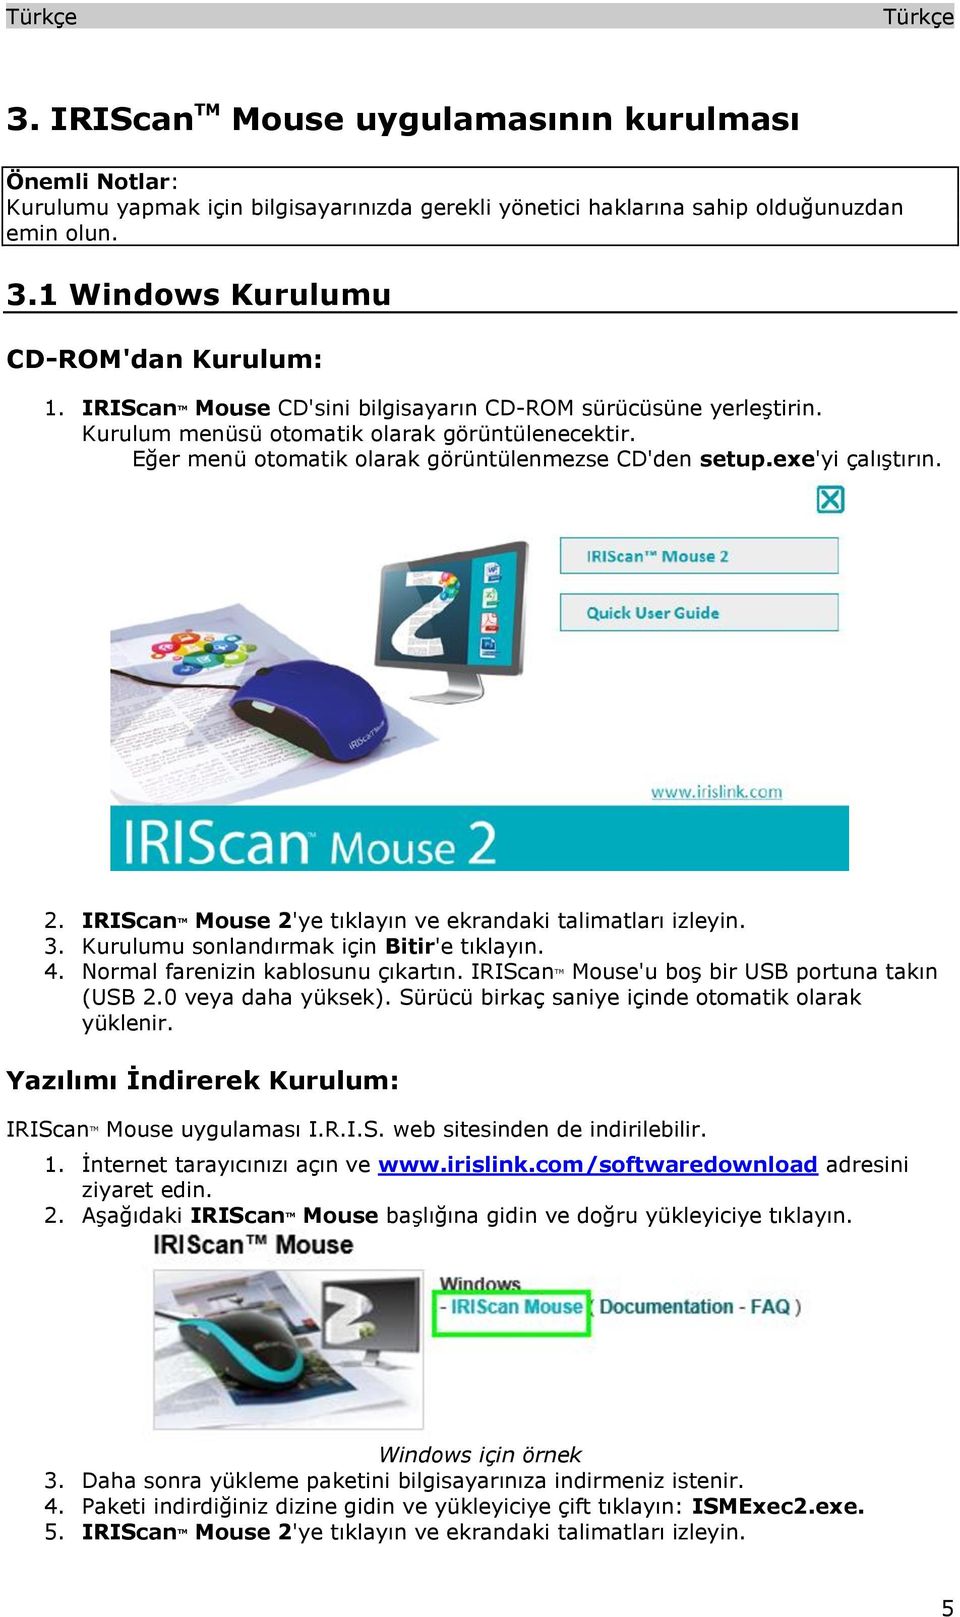 IRIScan TM Mouse 2'ye tıklayın ve ekrandaki talimatları izleyin. 3. Kurulumu sonlandırmak için Bitir'e tıklayın. 4. Normal farenizin kablosunu çıkartın.